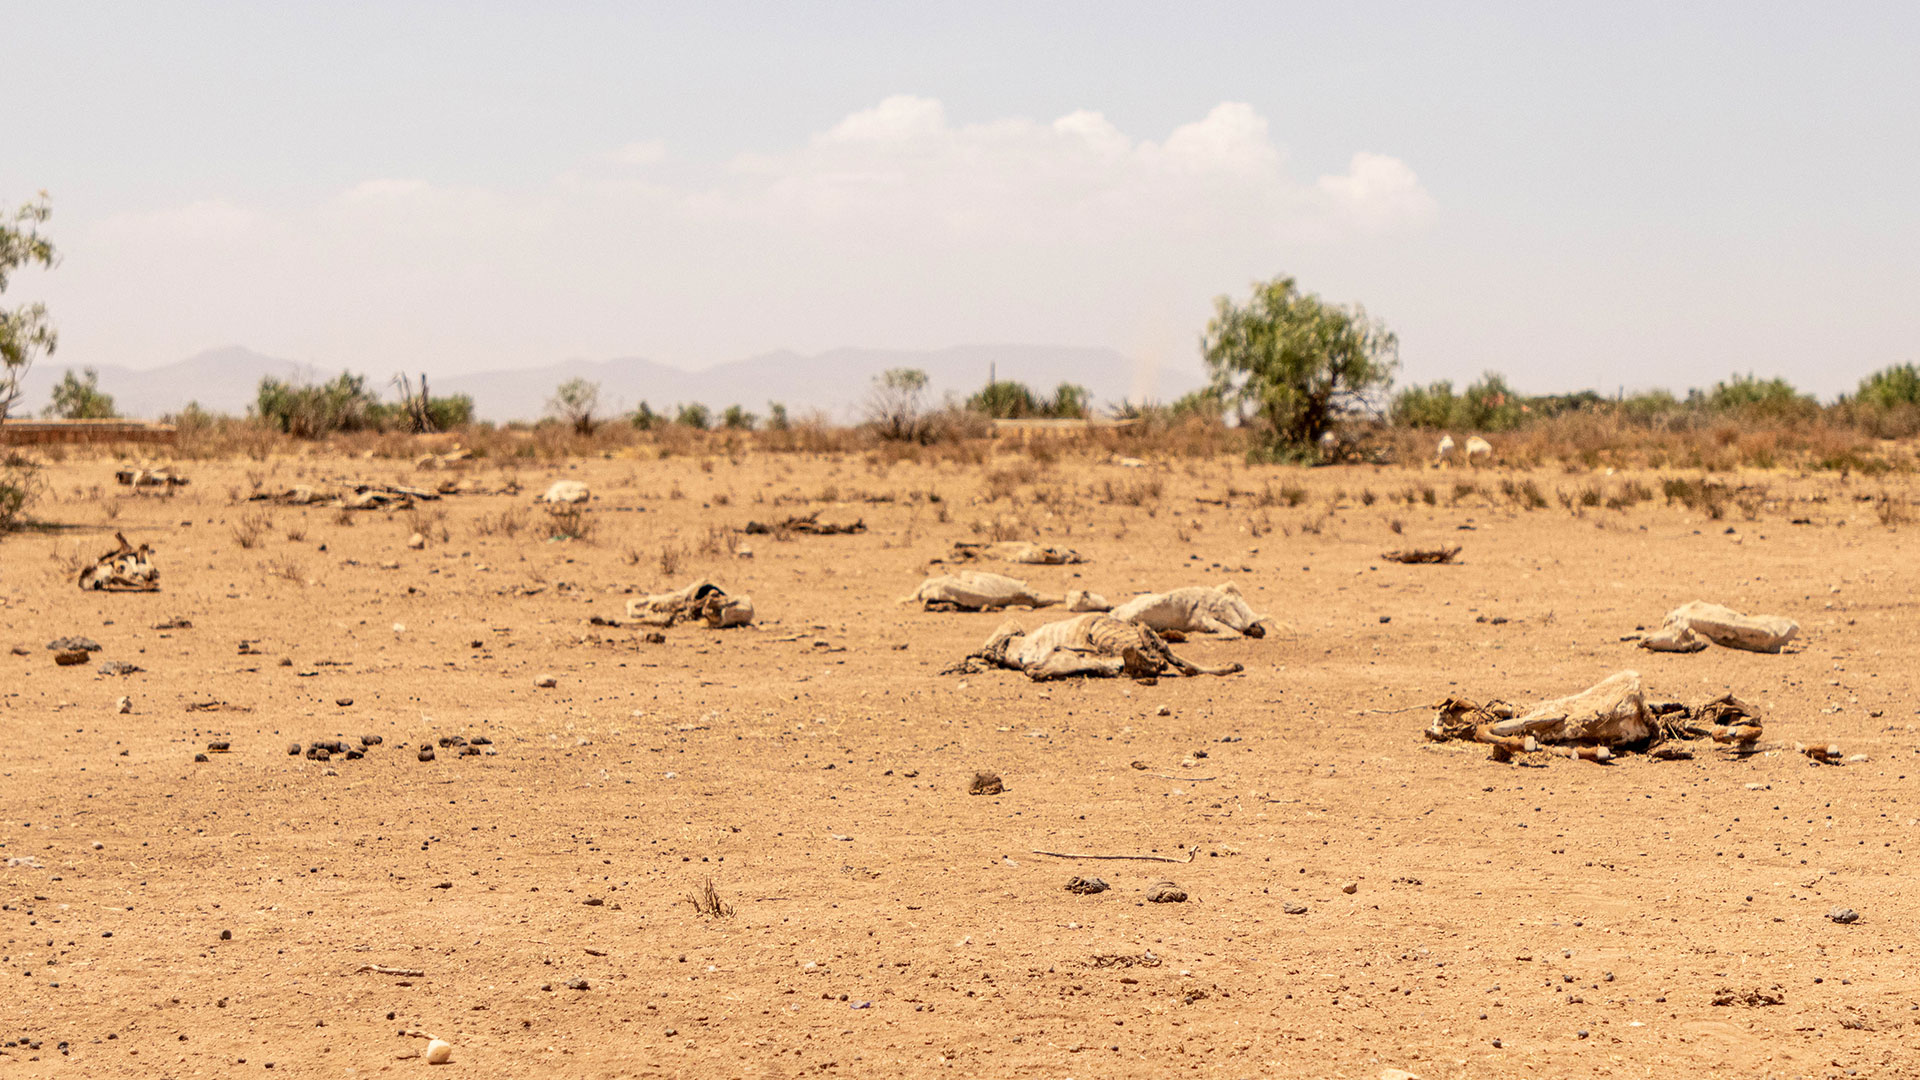 El cambio climático y las sequías en Jijiga, Etiopía, provocan el desplazamiento de familias que intentan sobrevivir a la hambruna, la inseguridad y la escasez de agua. Créditos ACNUR – Eugene Sibomana.